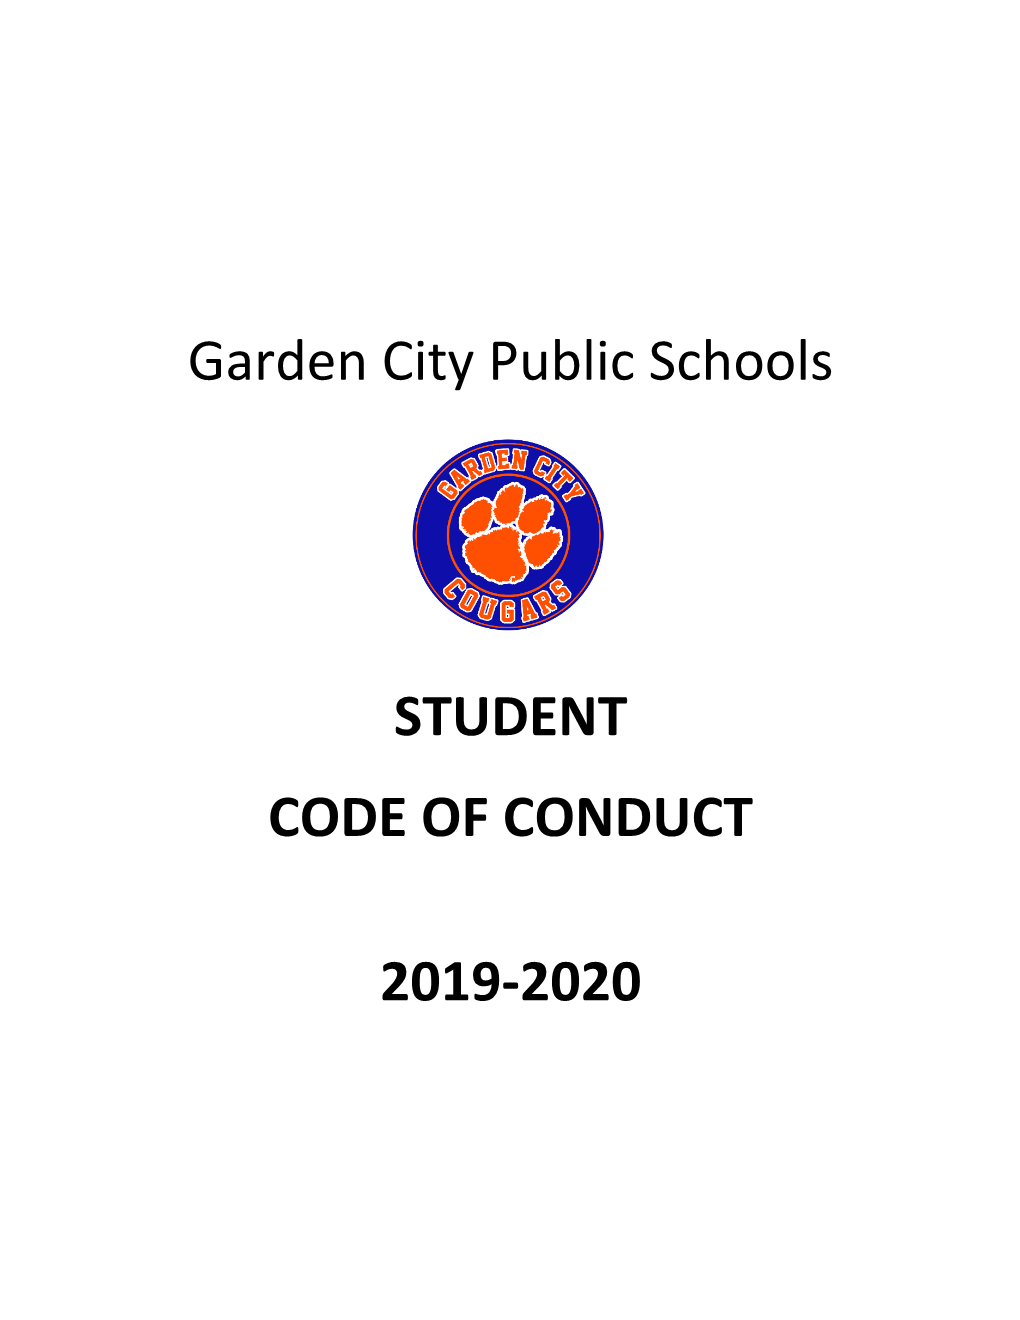 Garden City Public Schools STUDENT CODE of CONDUCT 2019-2020